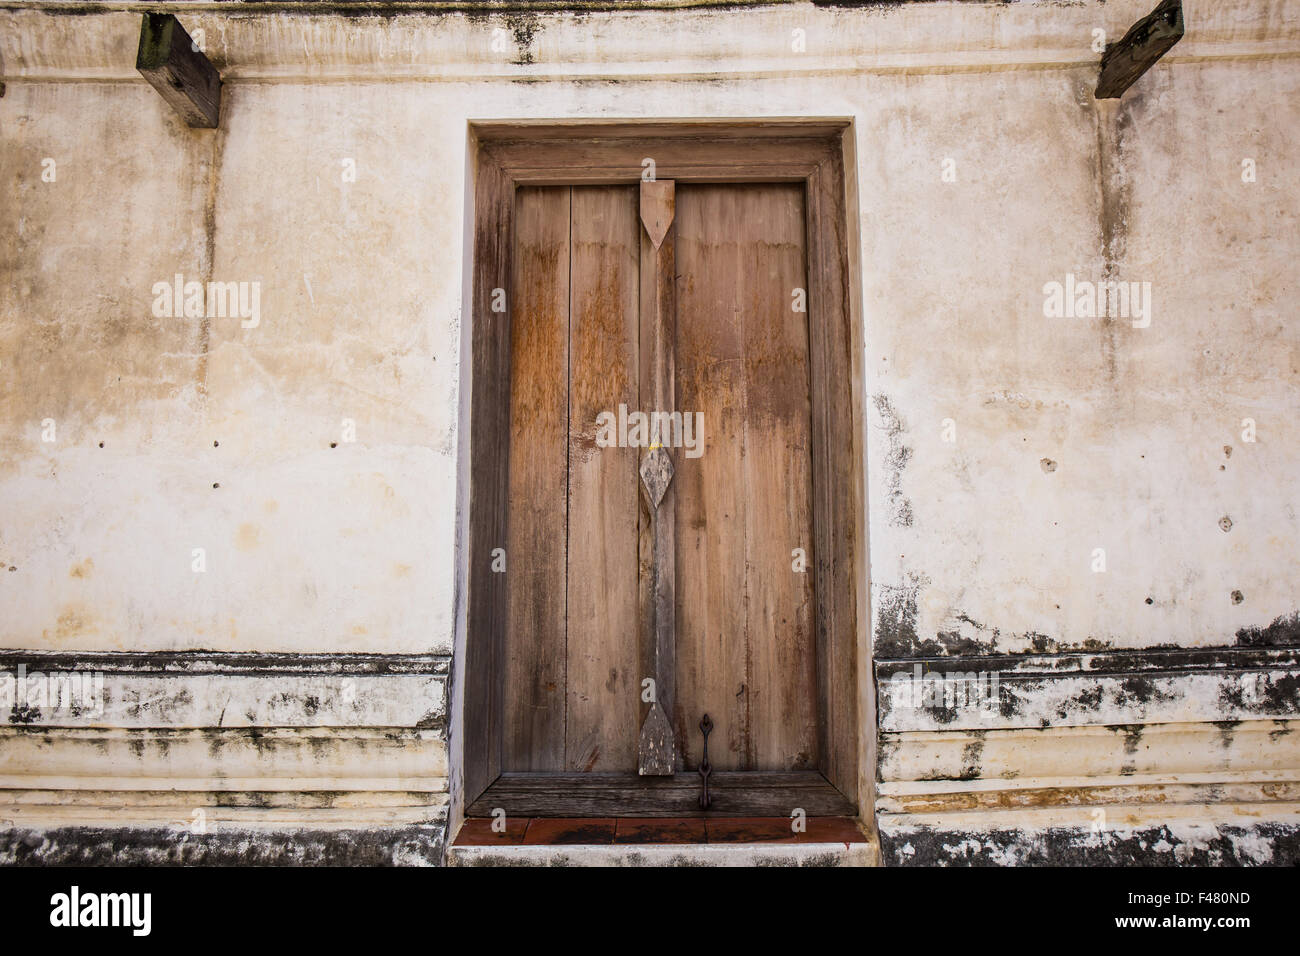 Cadre de porte en bois dans un sanctuaire antique. Wat Putthaisawan, Ayutthaya, Thaïlande. Banque D'Images